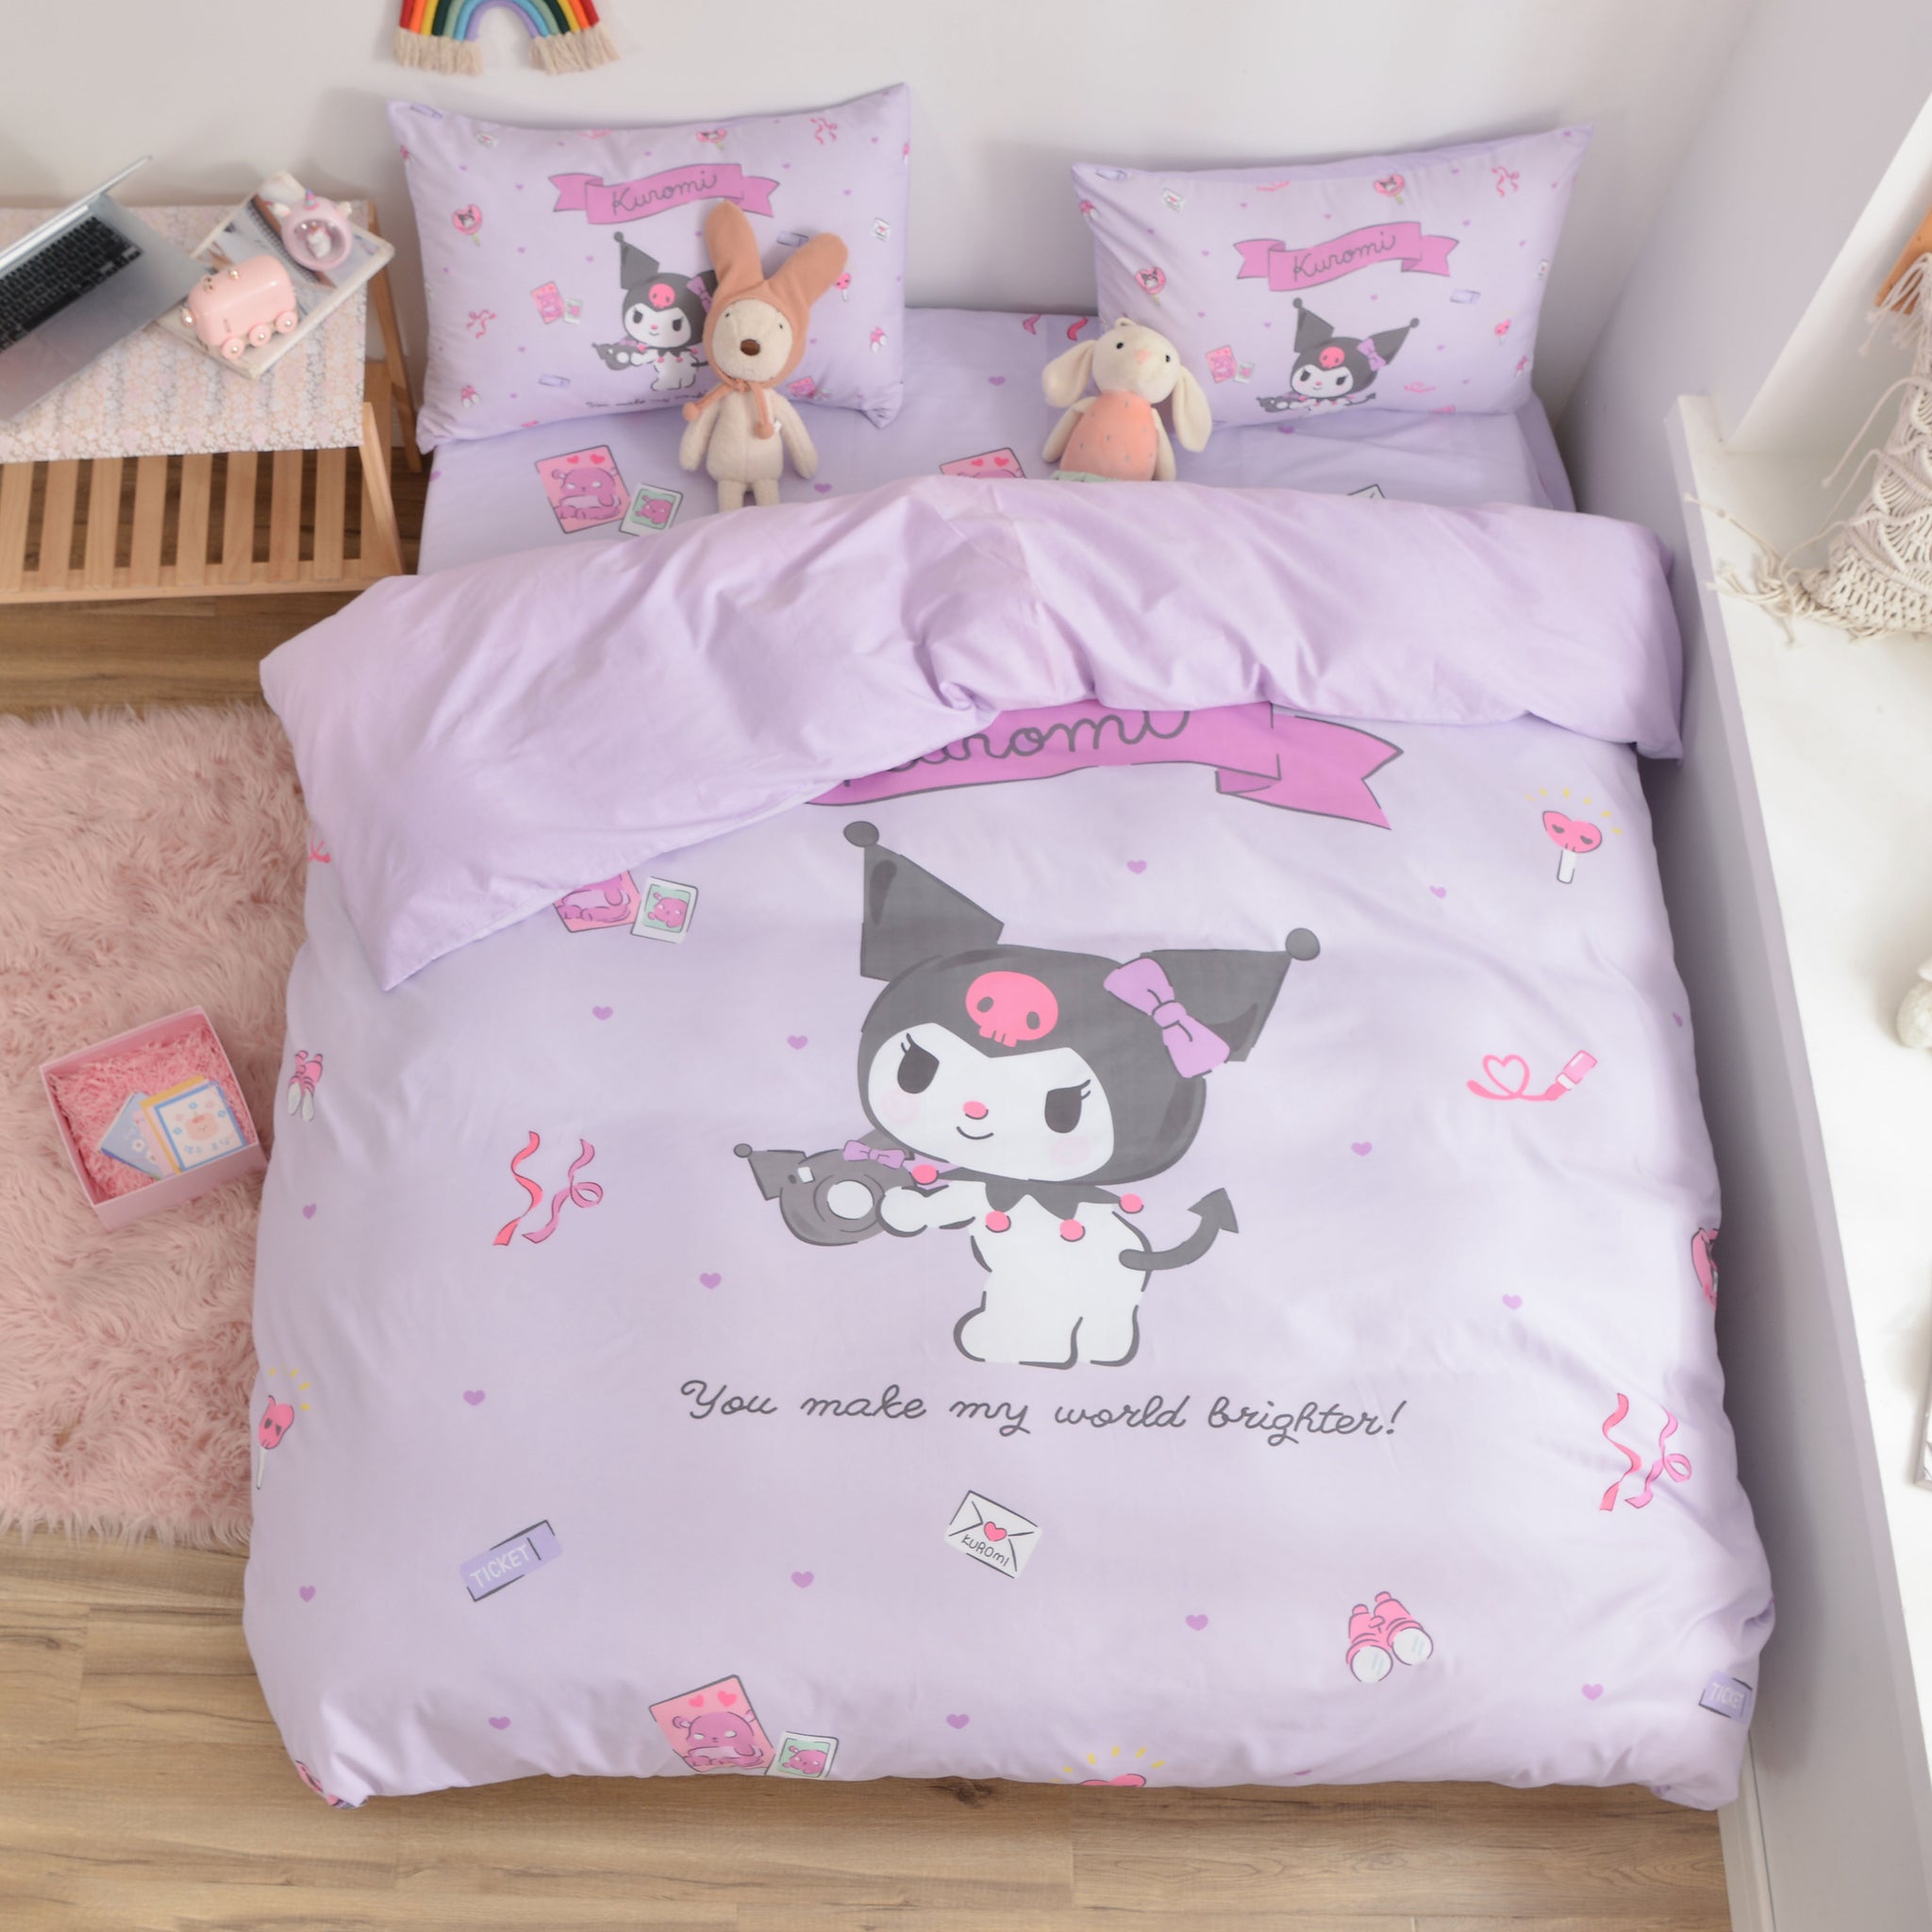 My Hero Academia Bed Set Twin Size Anime Bedding Brazil | Ubuy